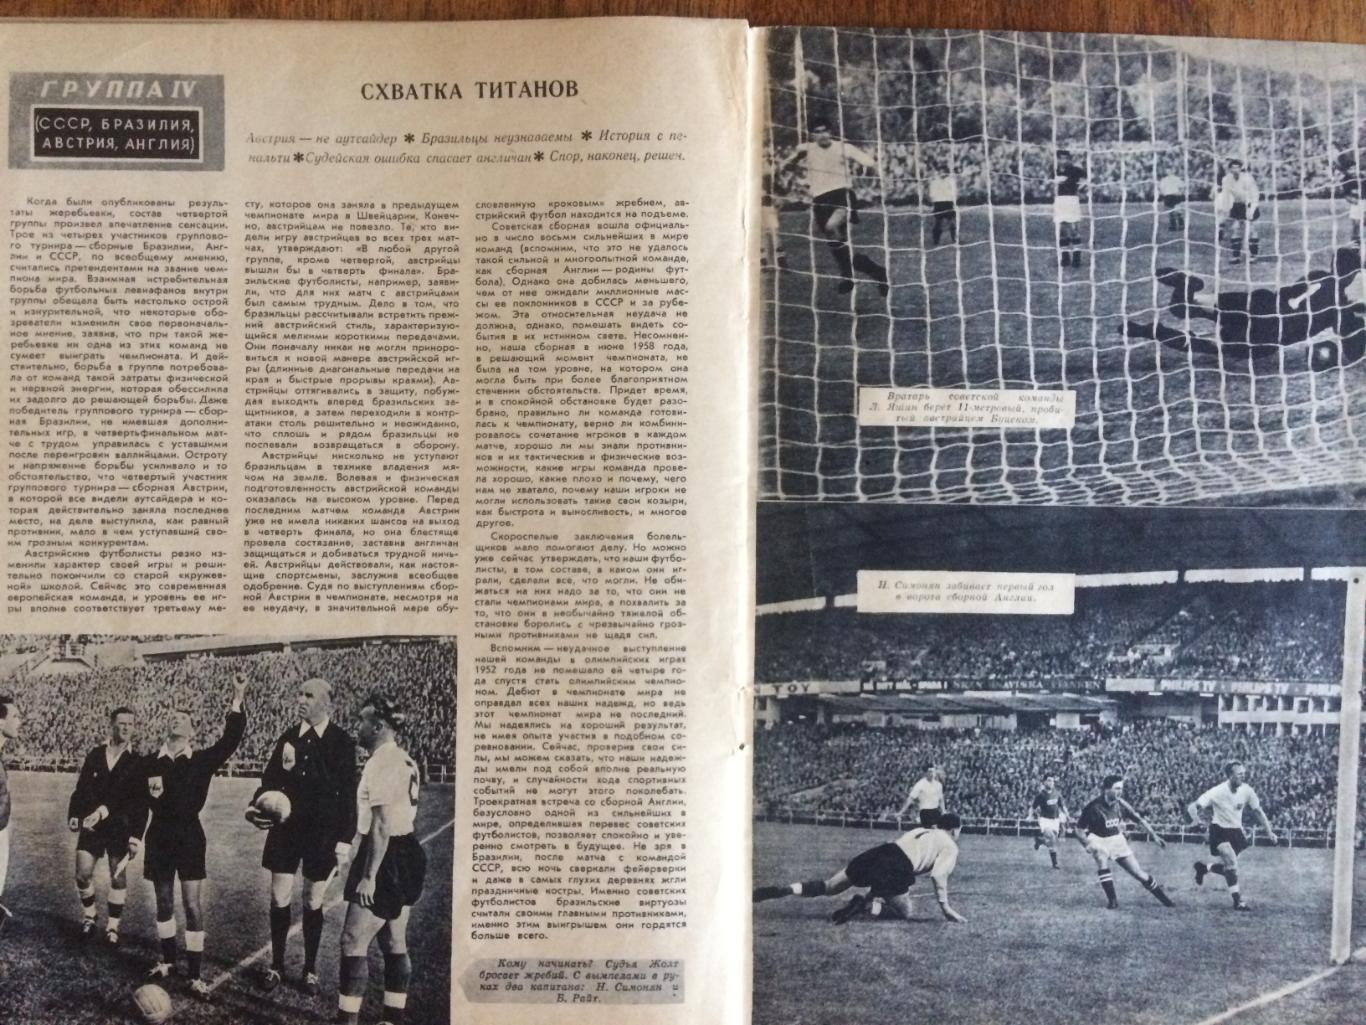 Журнал Спортивные игры №7 1958 Чемпионат мира Швеция 4